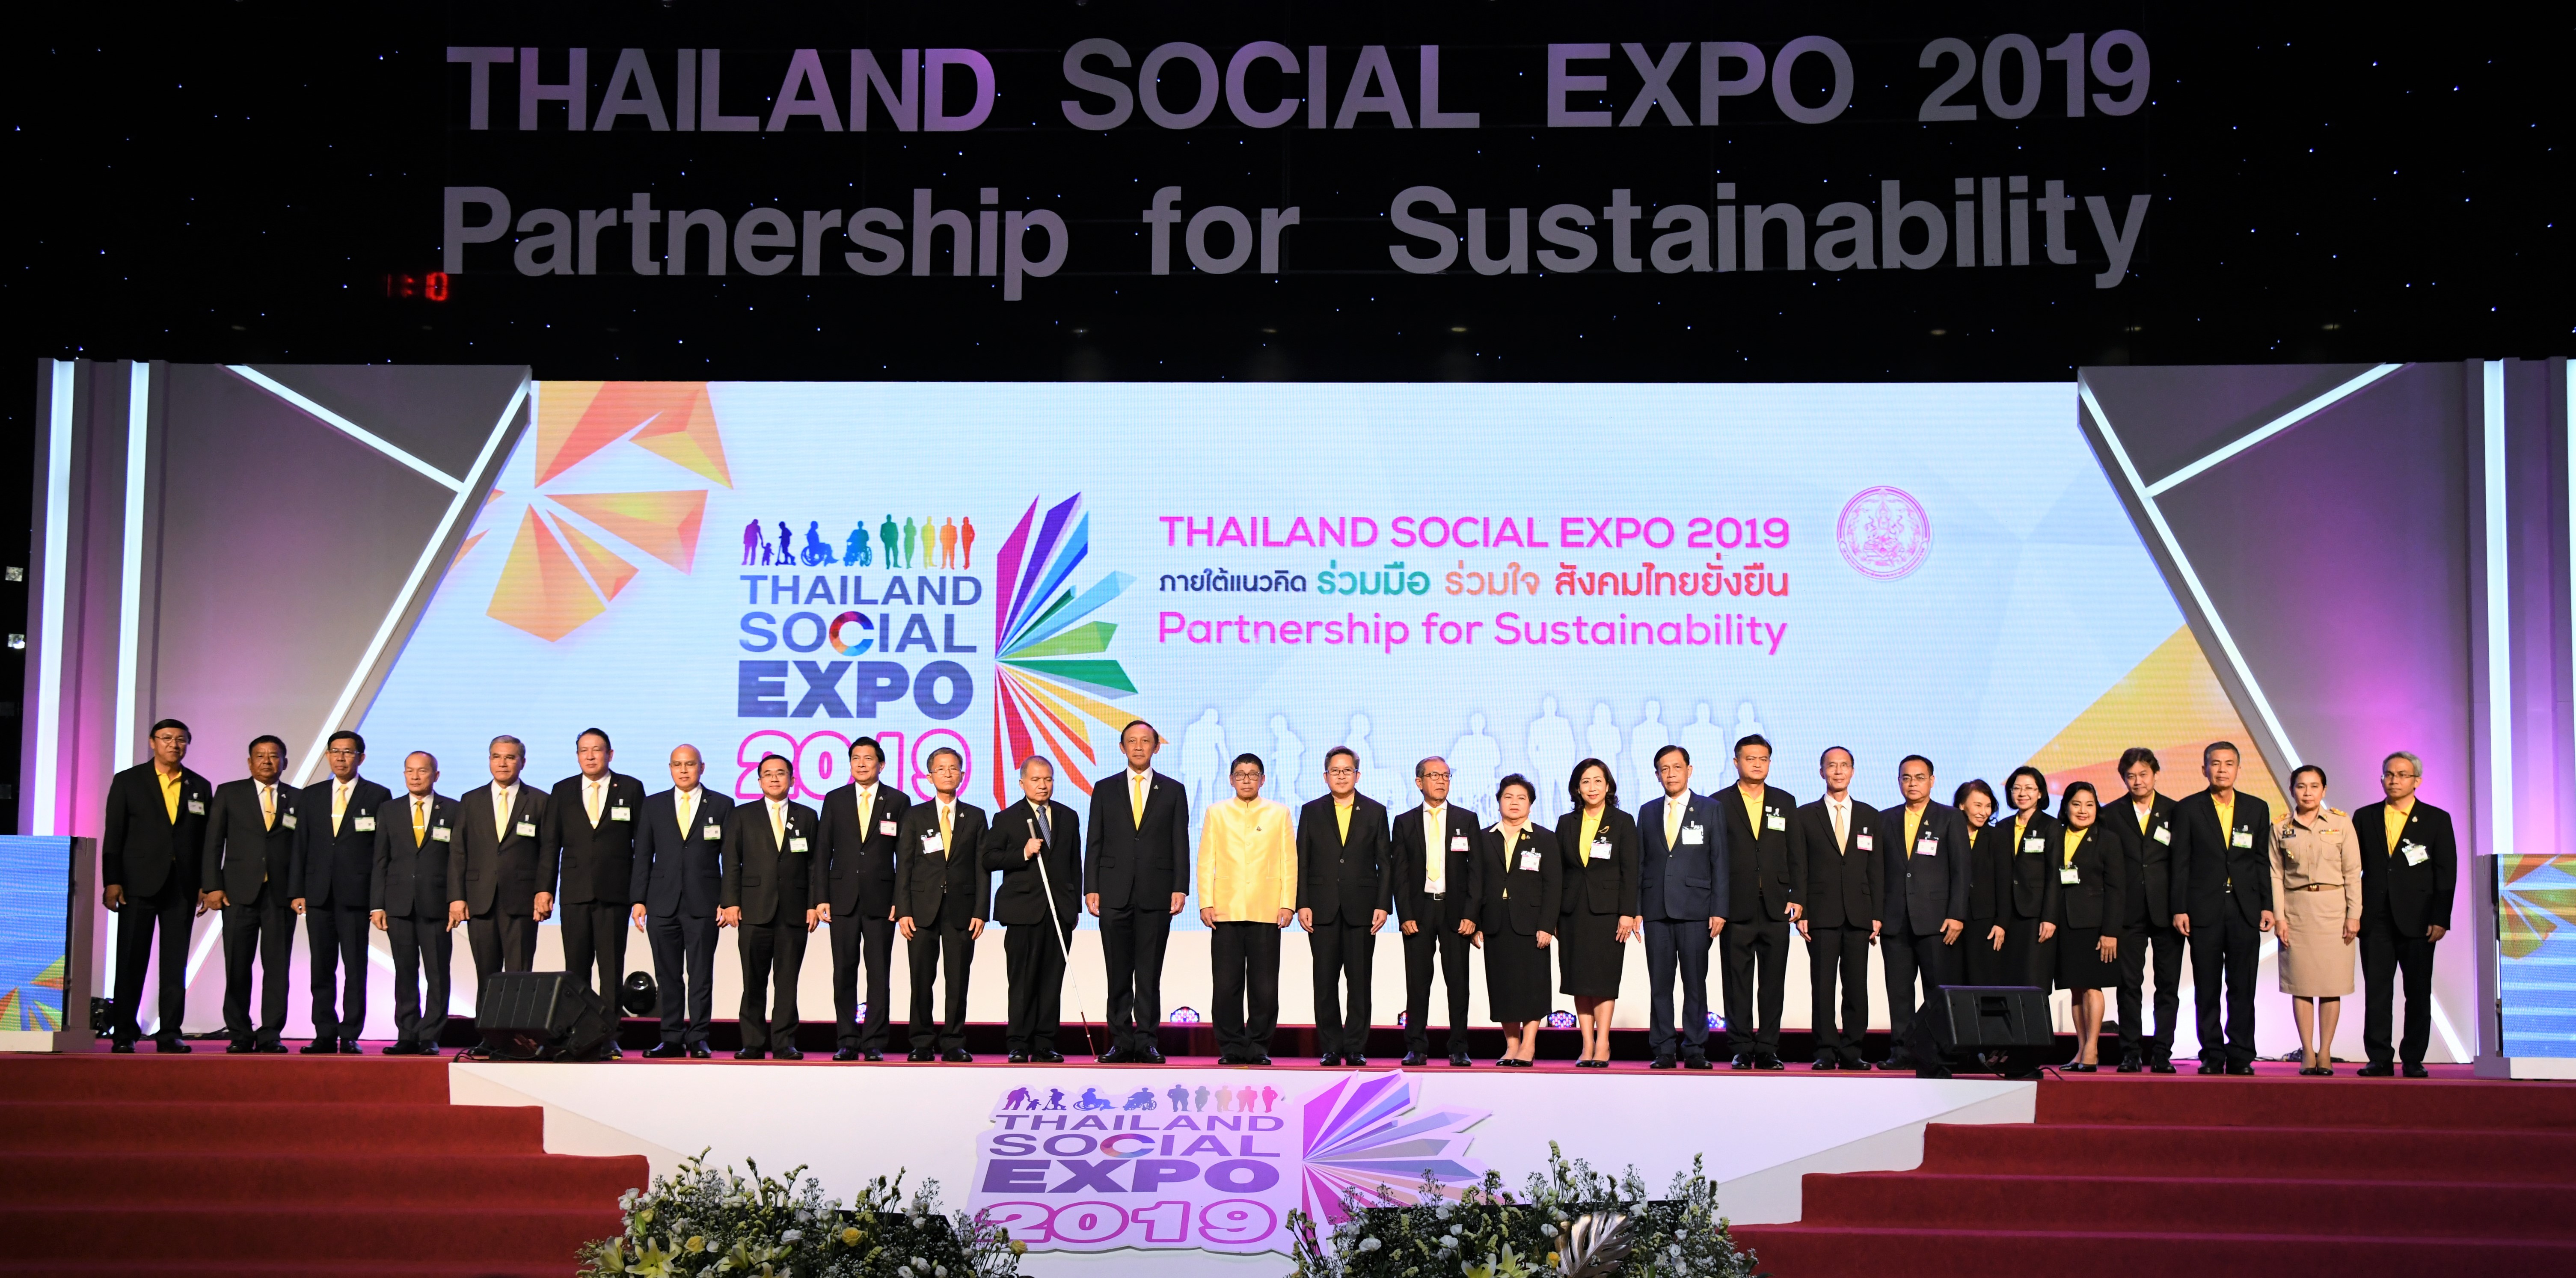 เปิดงาน Thailand Social Expo 2019 ภายใต้แนวคิด “ร่วมมือ ร่วมใจ สังคมไทยยั่งยืน – Partnership for Sustainability” 